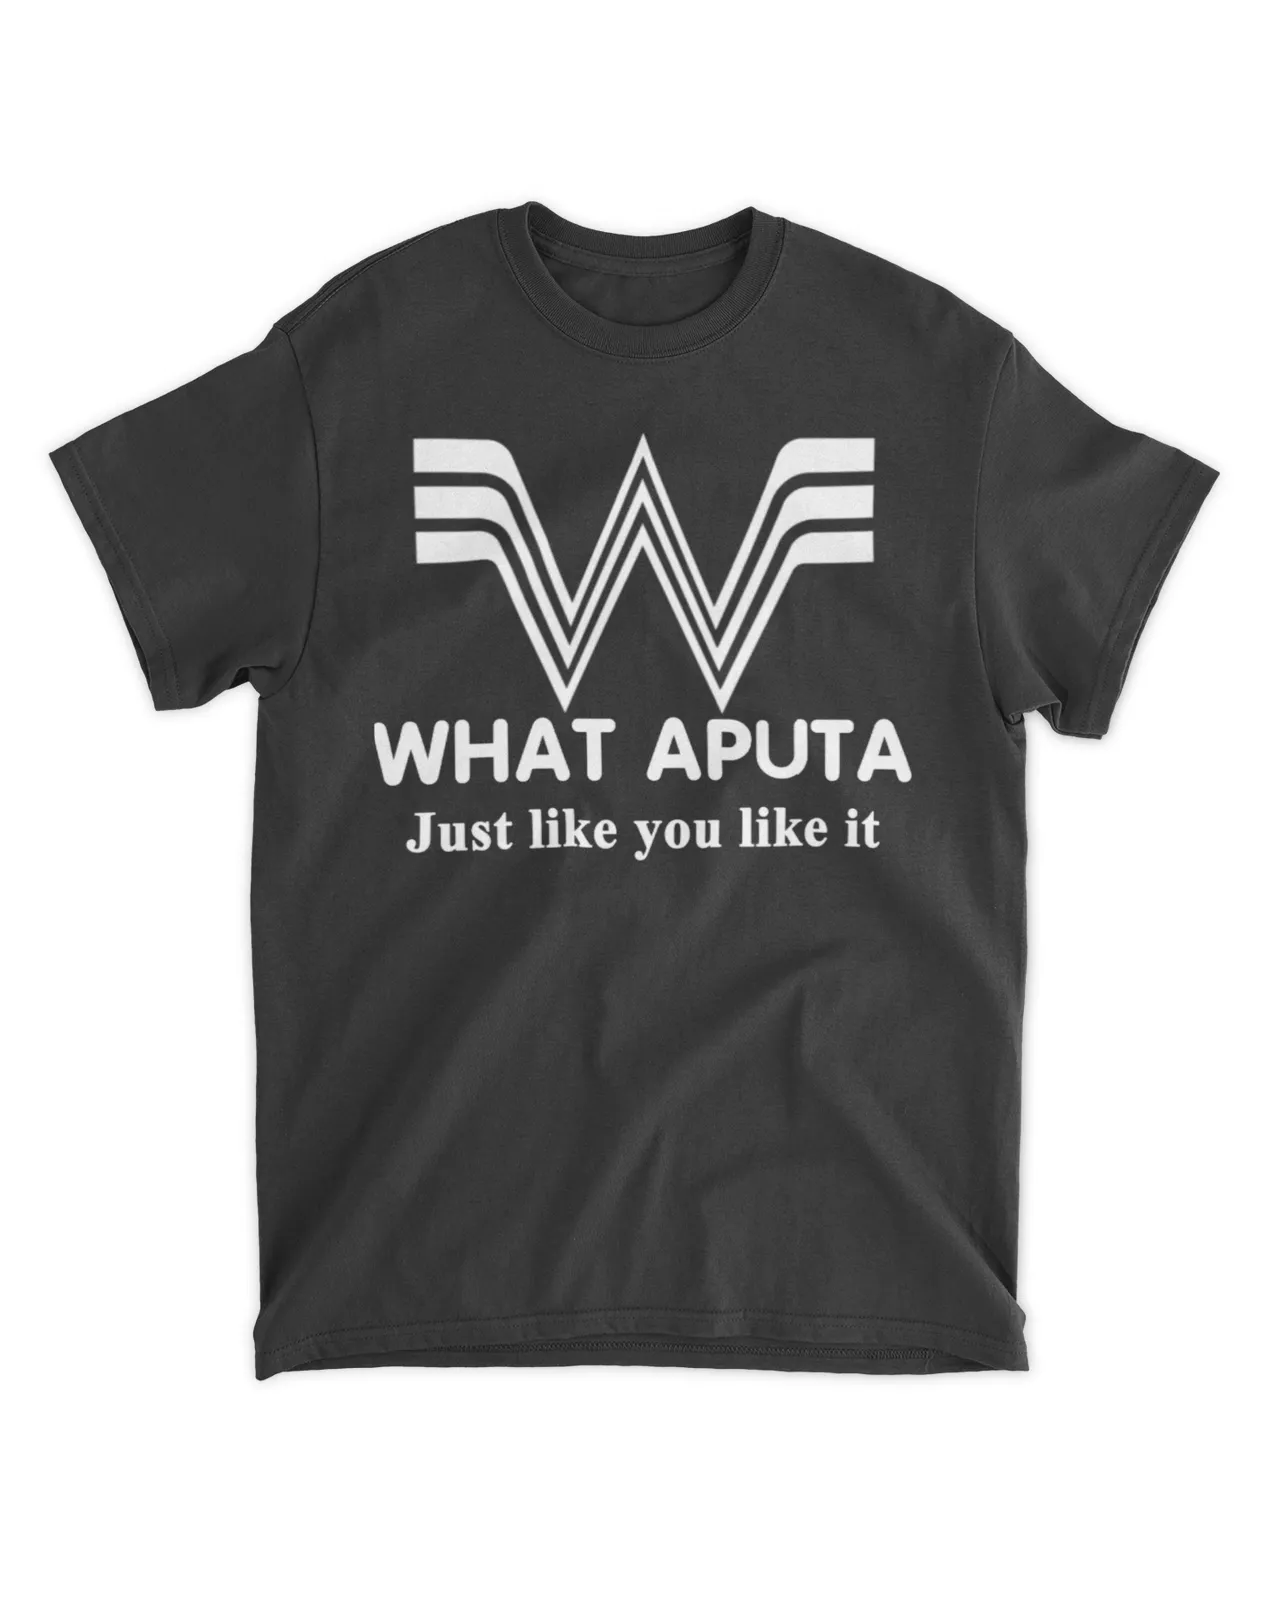  Whataputa Just like you like it shirt